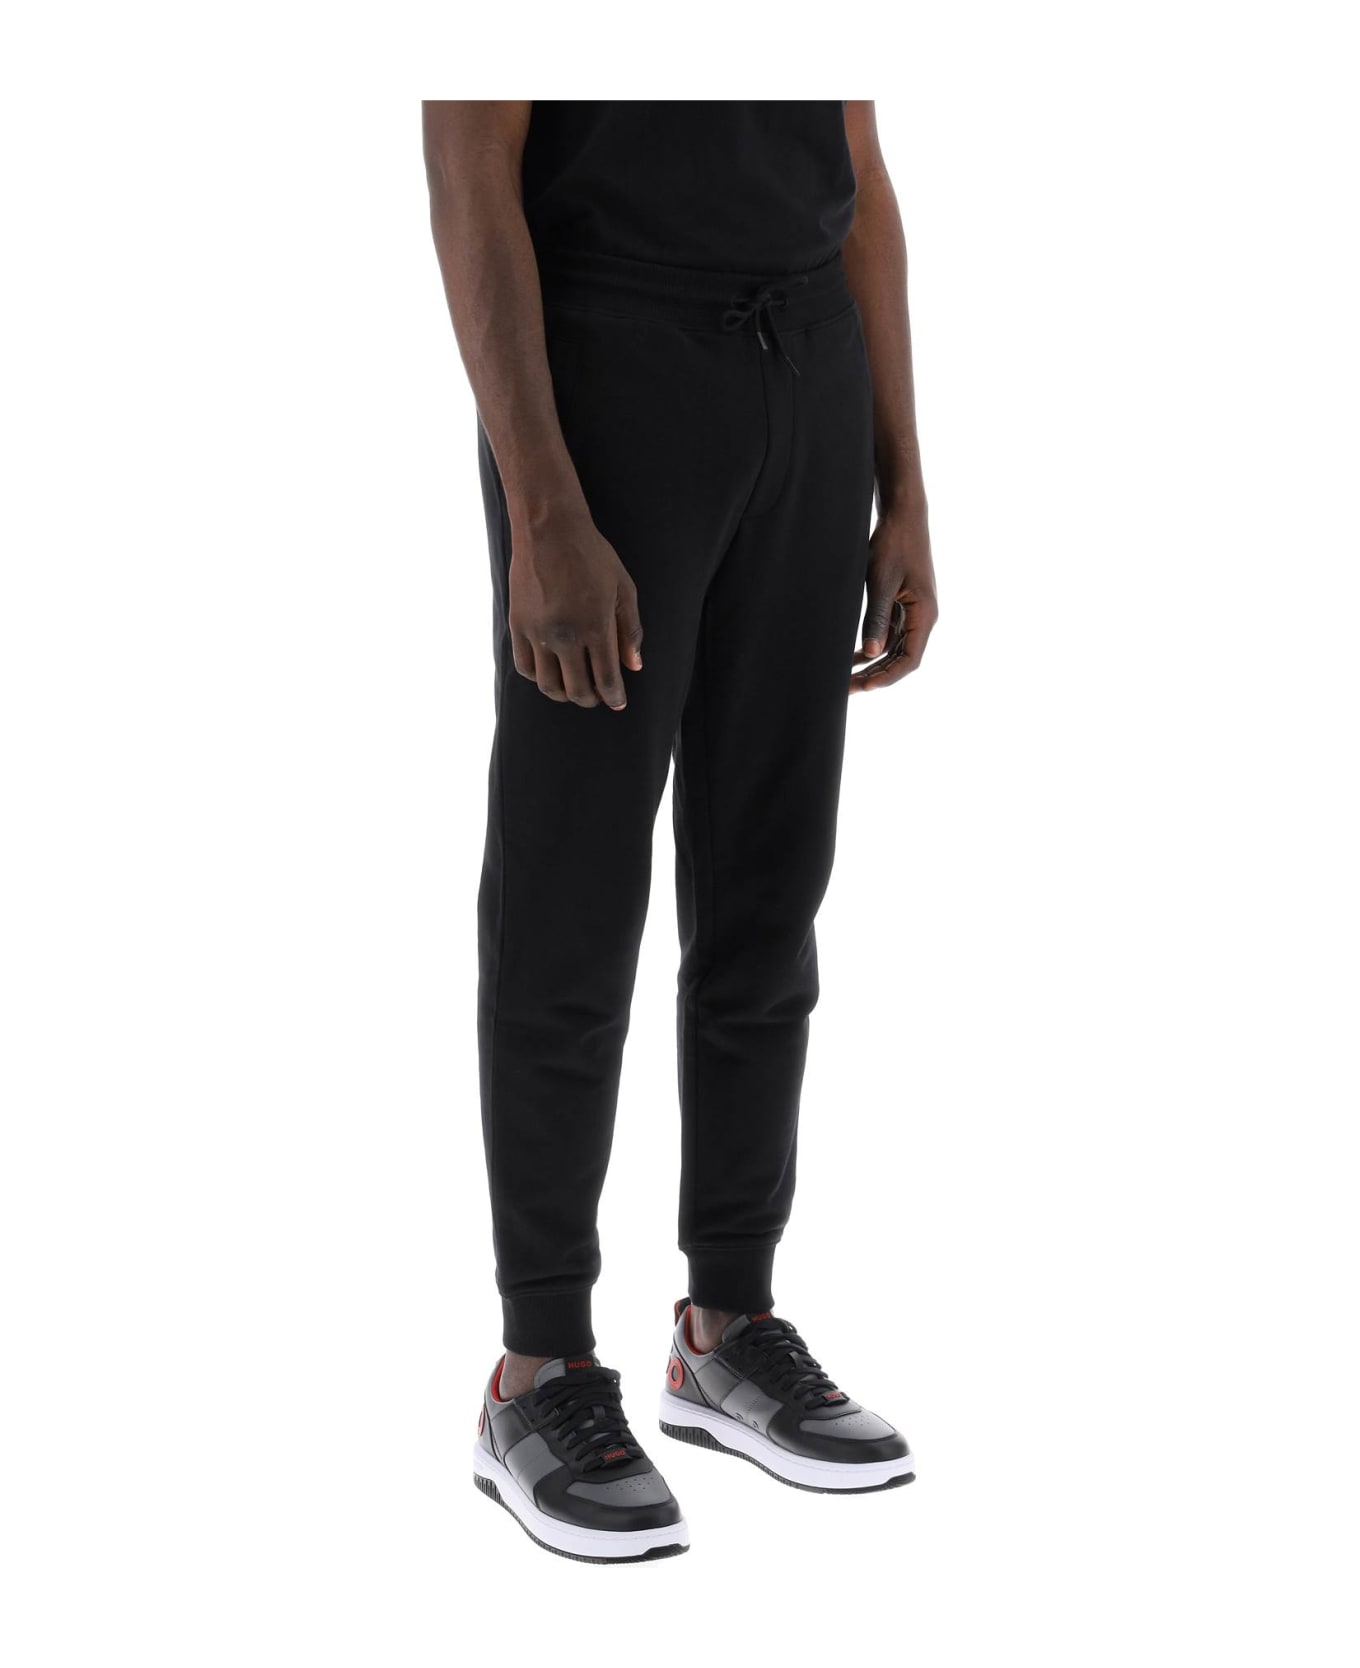 Hugo Boss Cotton Doak Jogger Pants - BLACK 009 (Black)